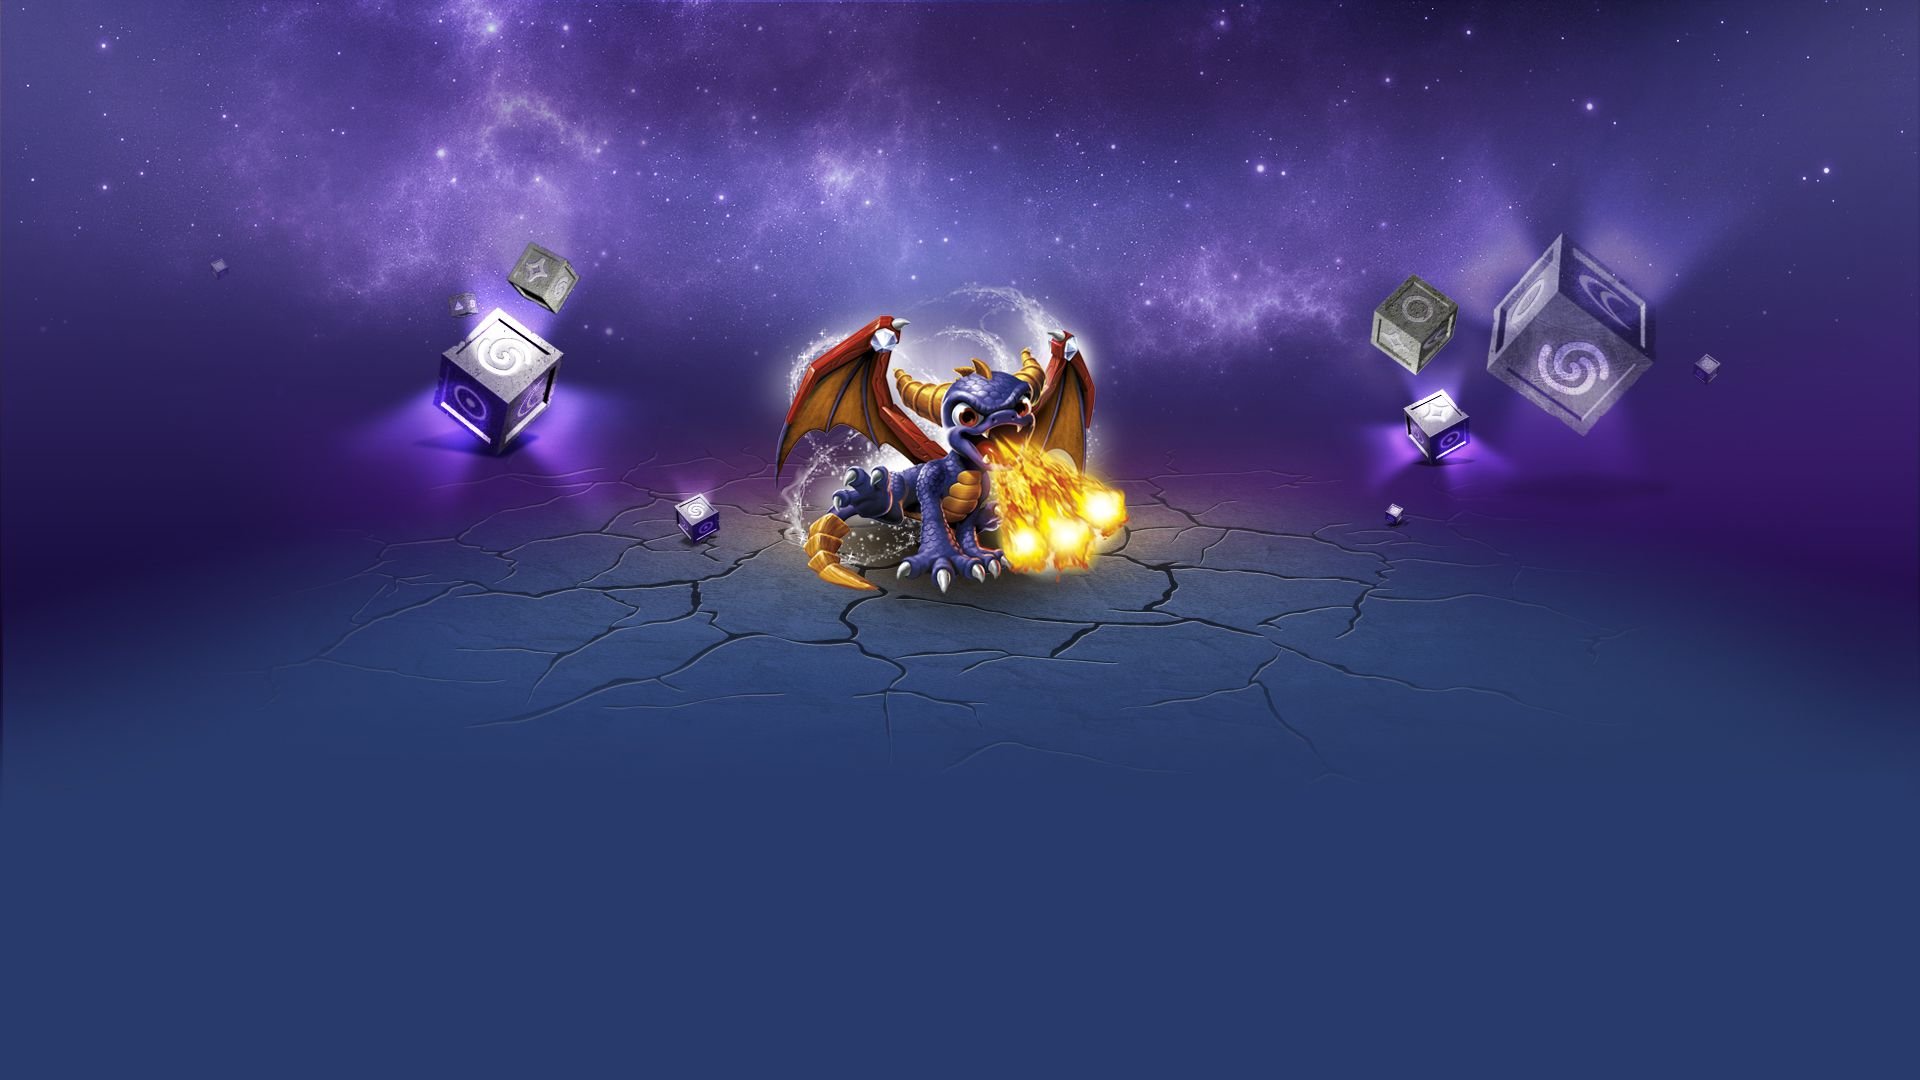 Spyro the Dragon HD Wallpaper